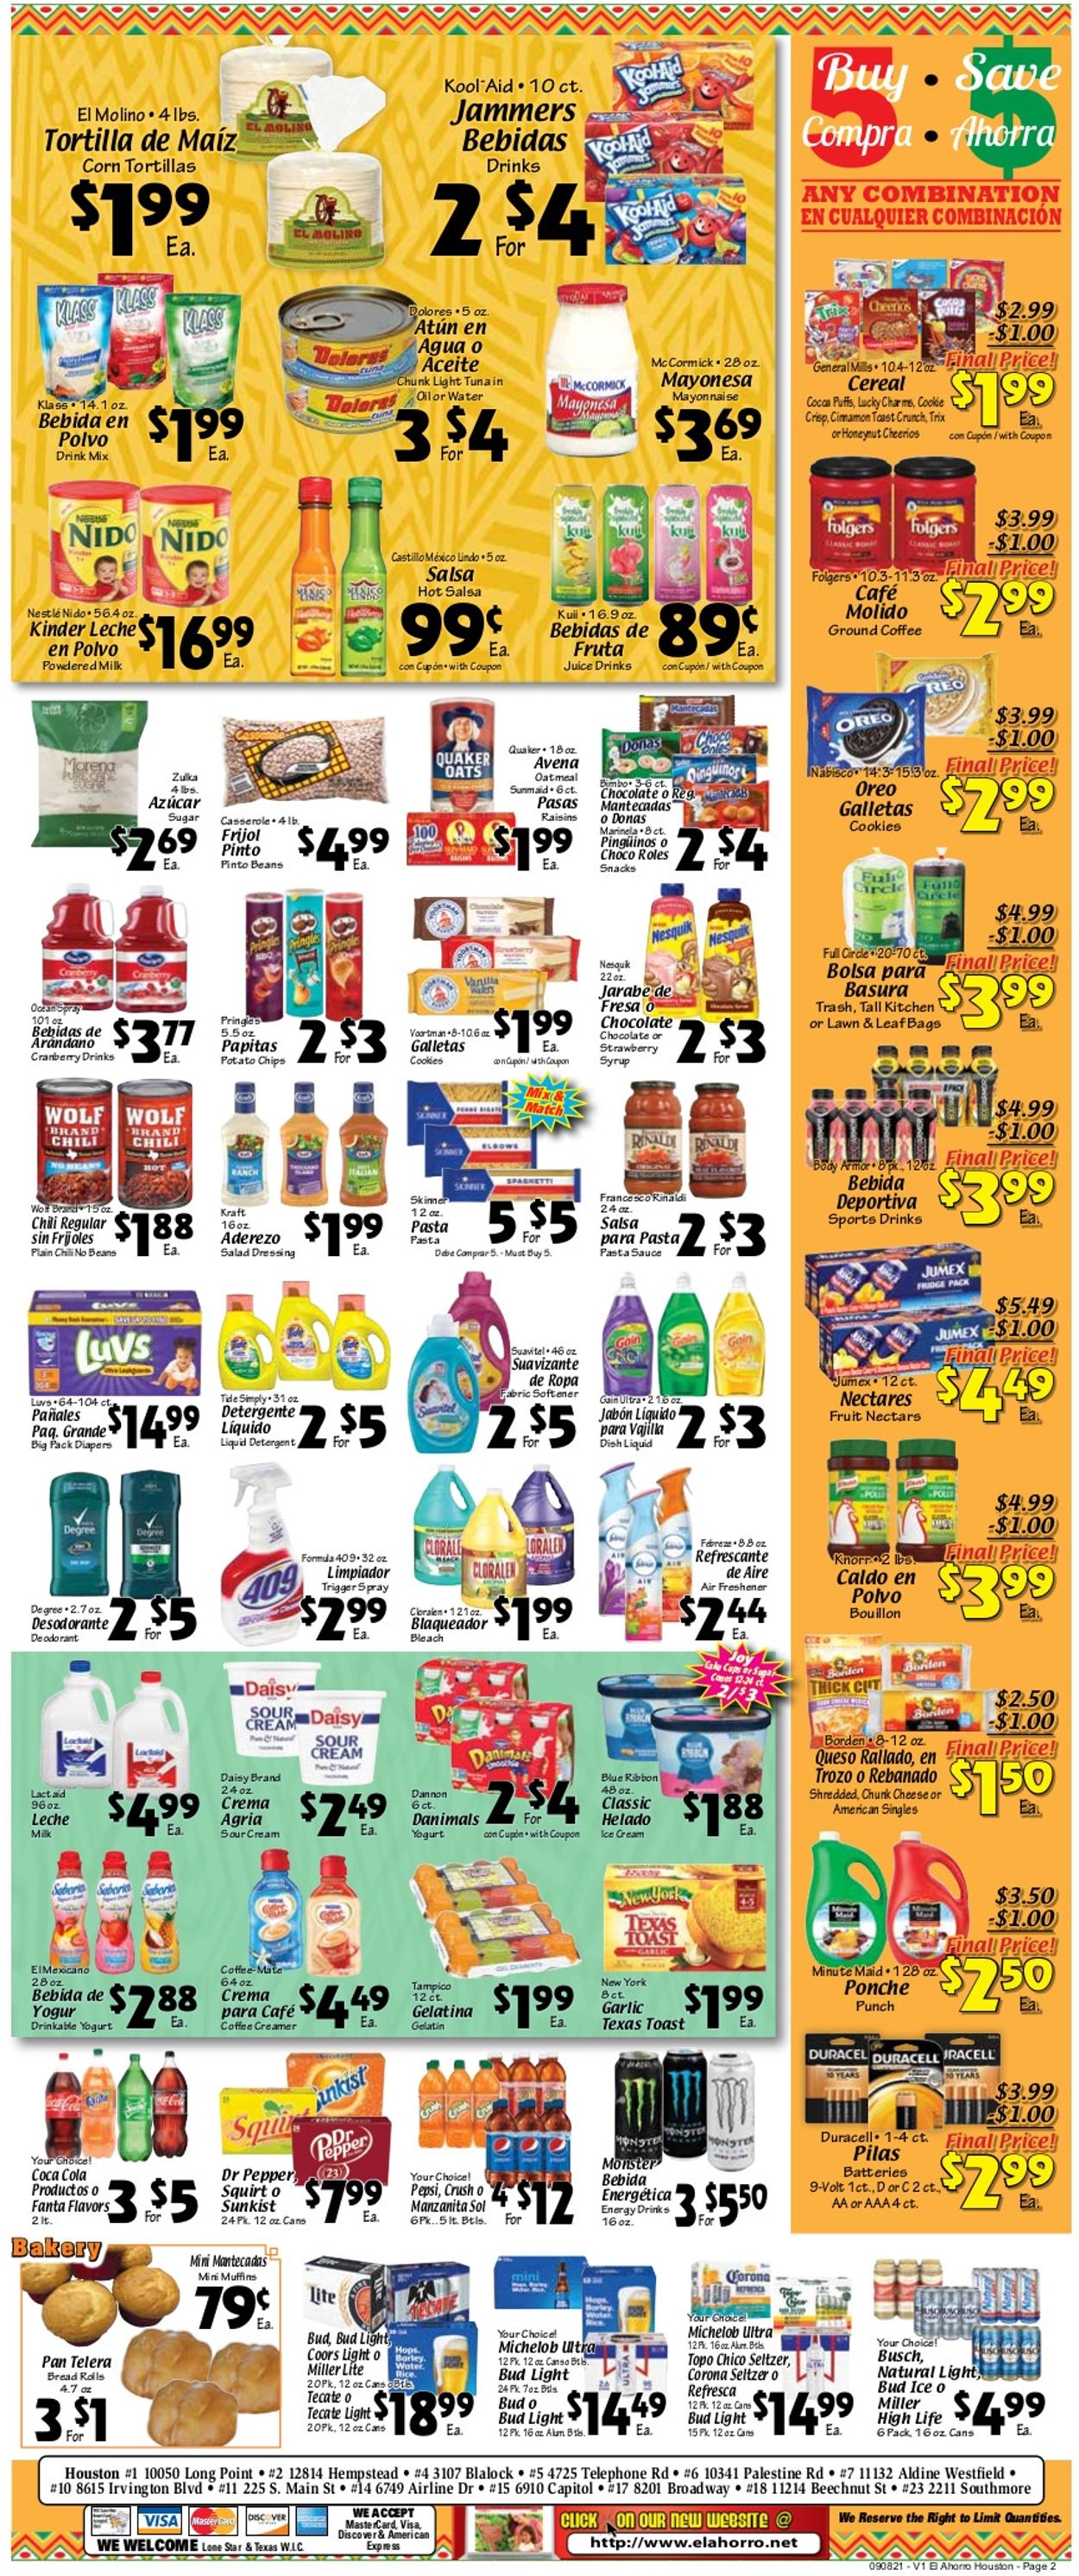 El Ahorro Supermarket Ad from 09/08/2021